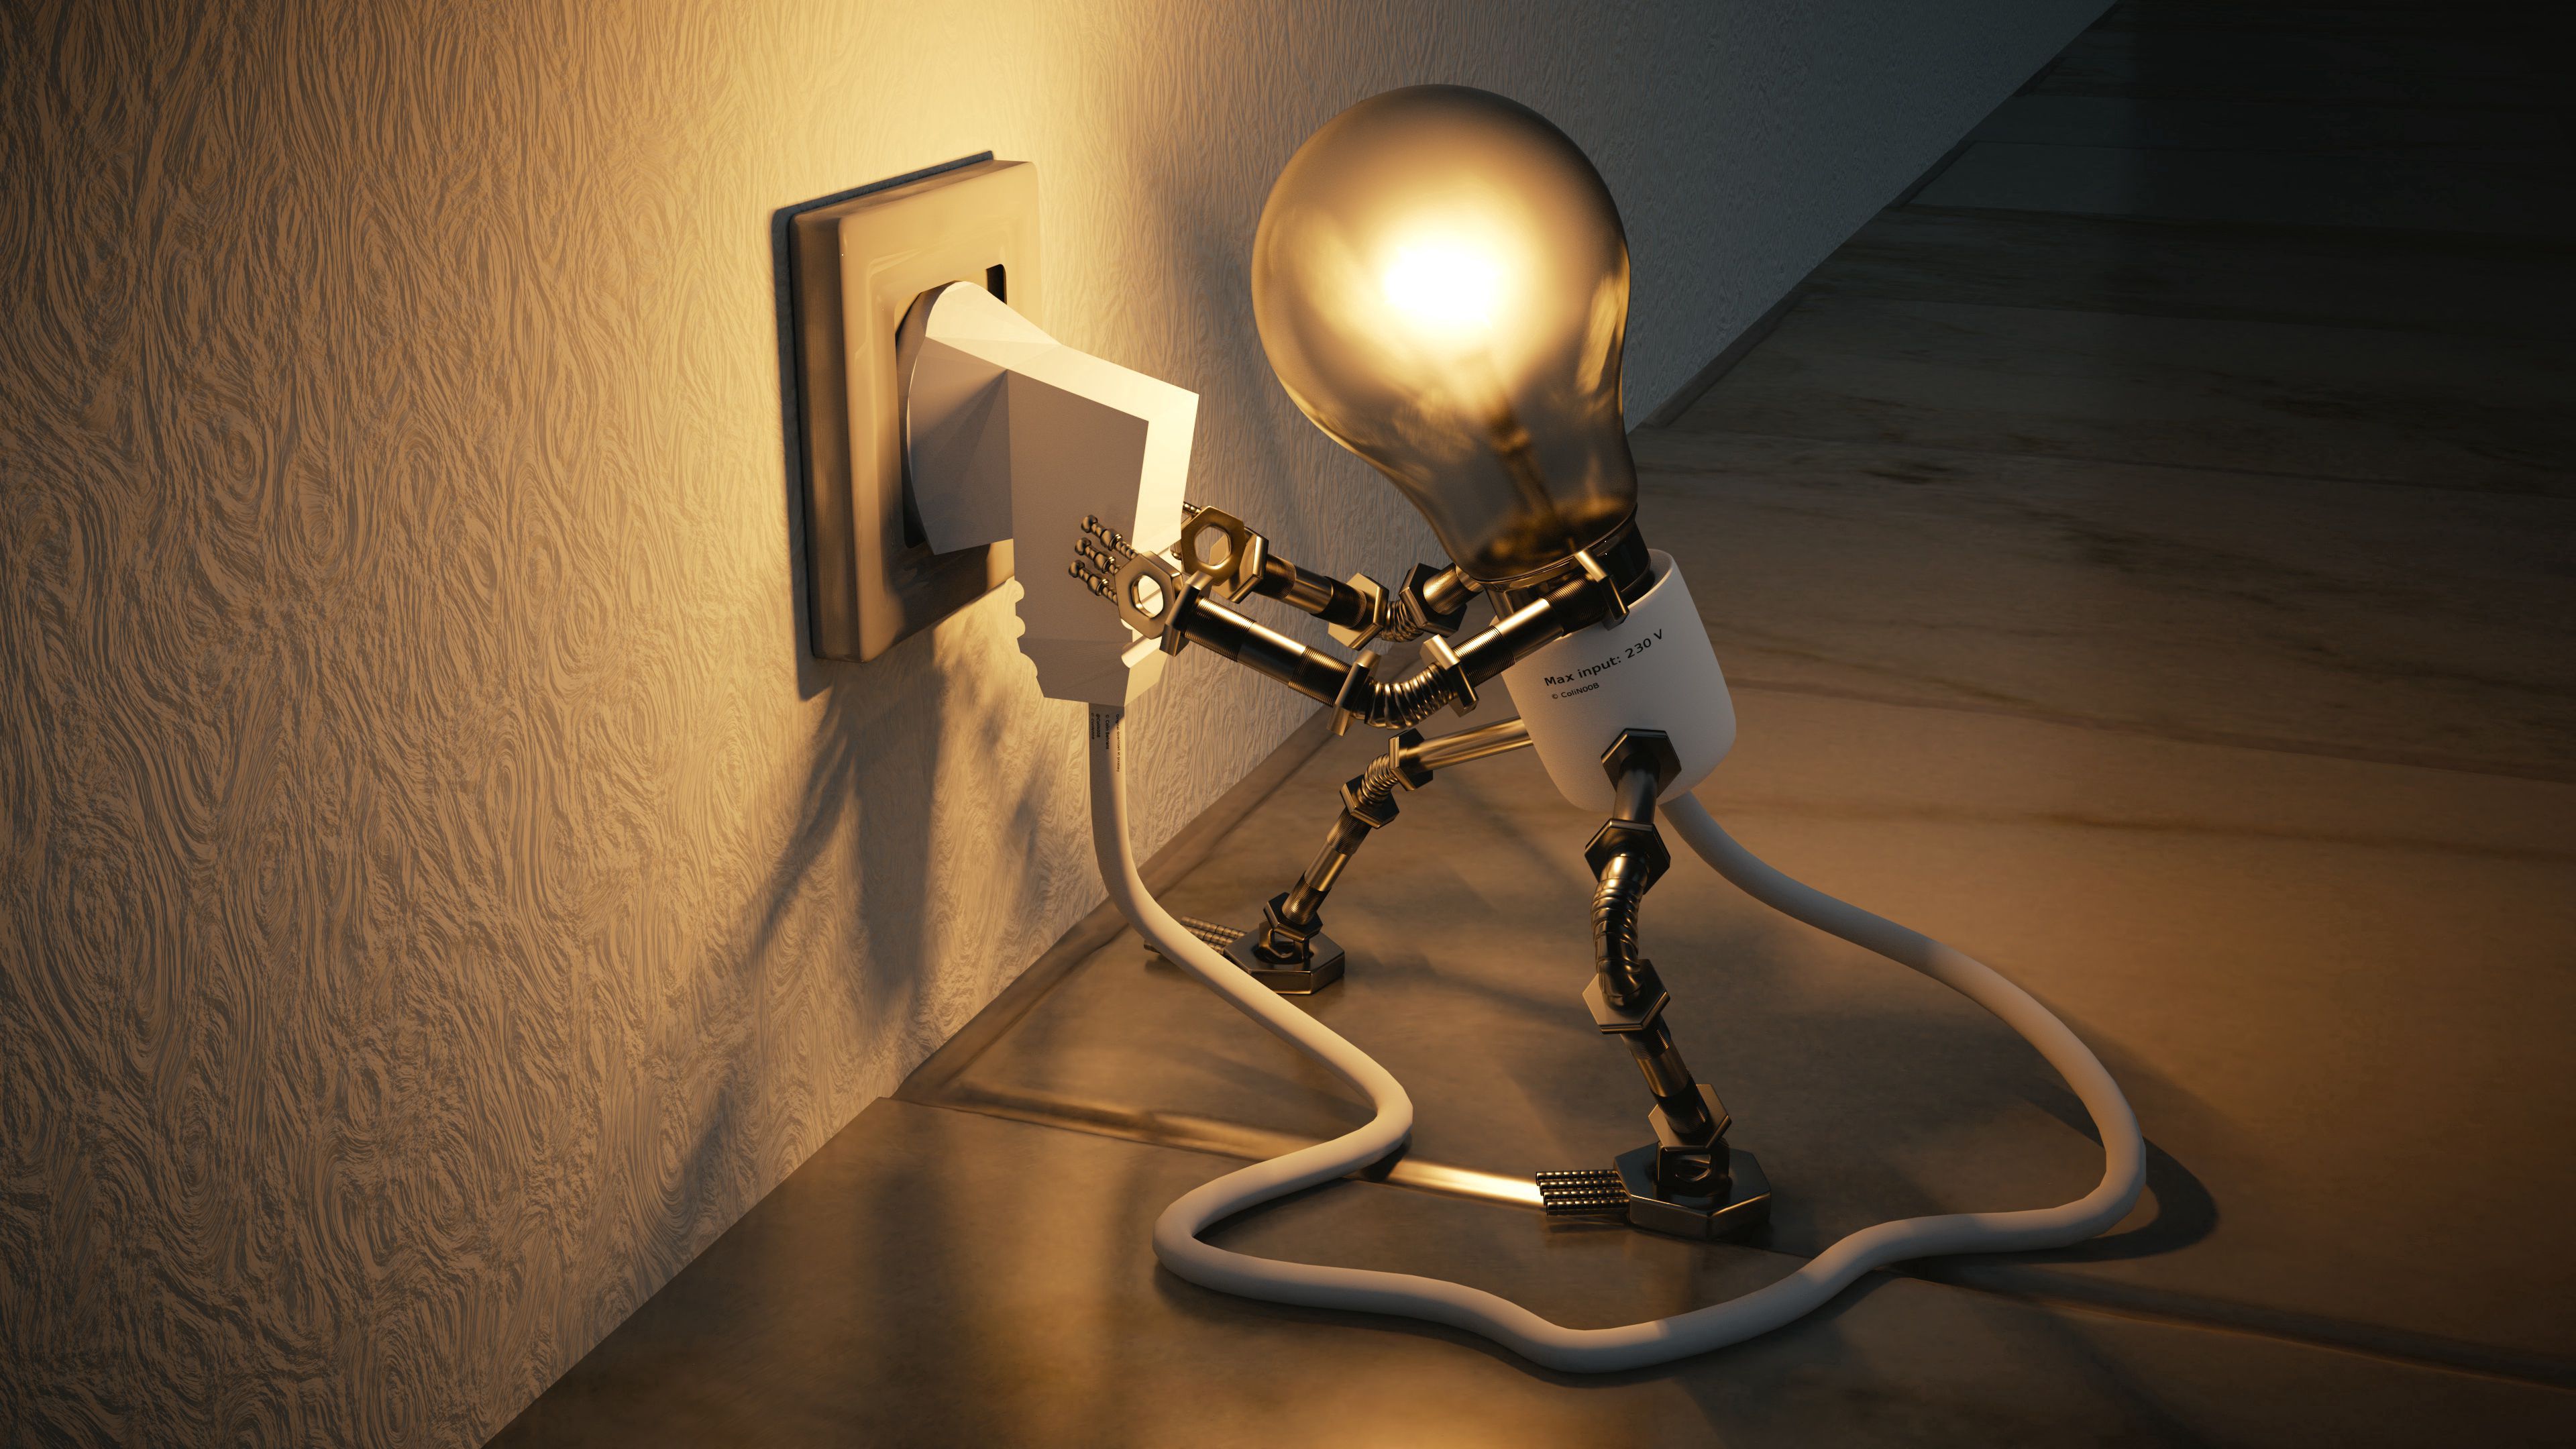 3d, socket, lamp, electricity, idea, rosette UHD